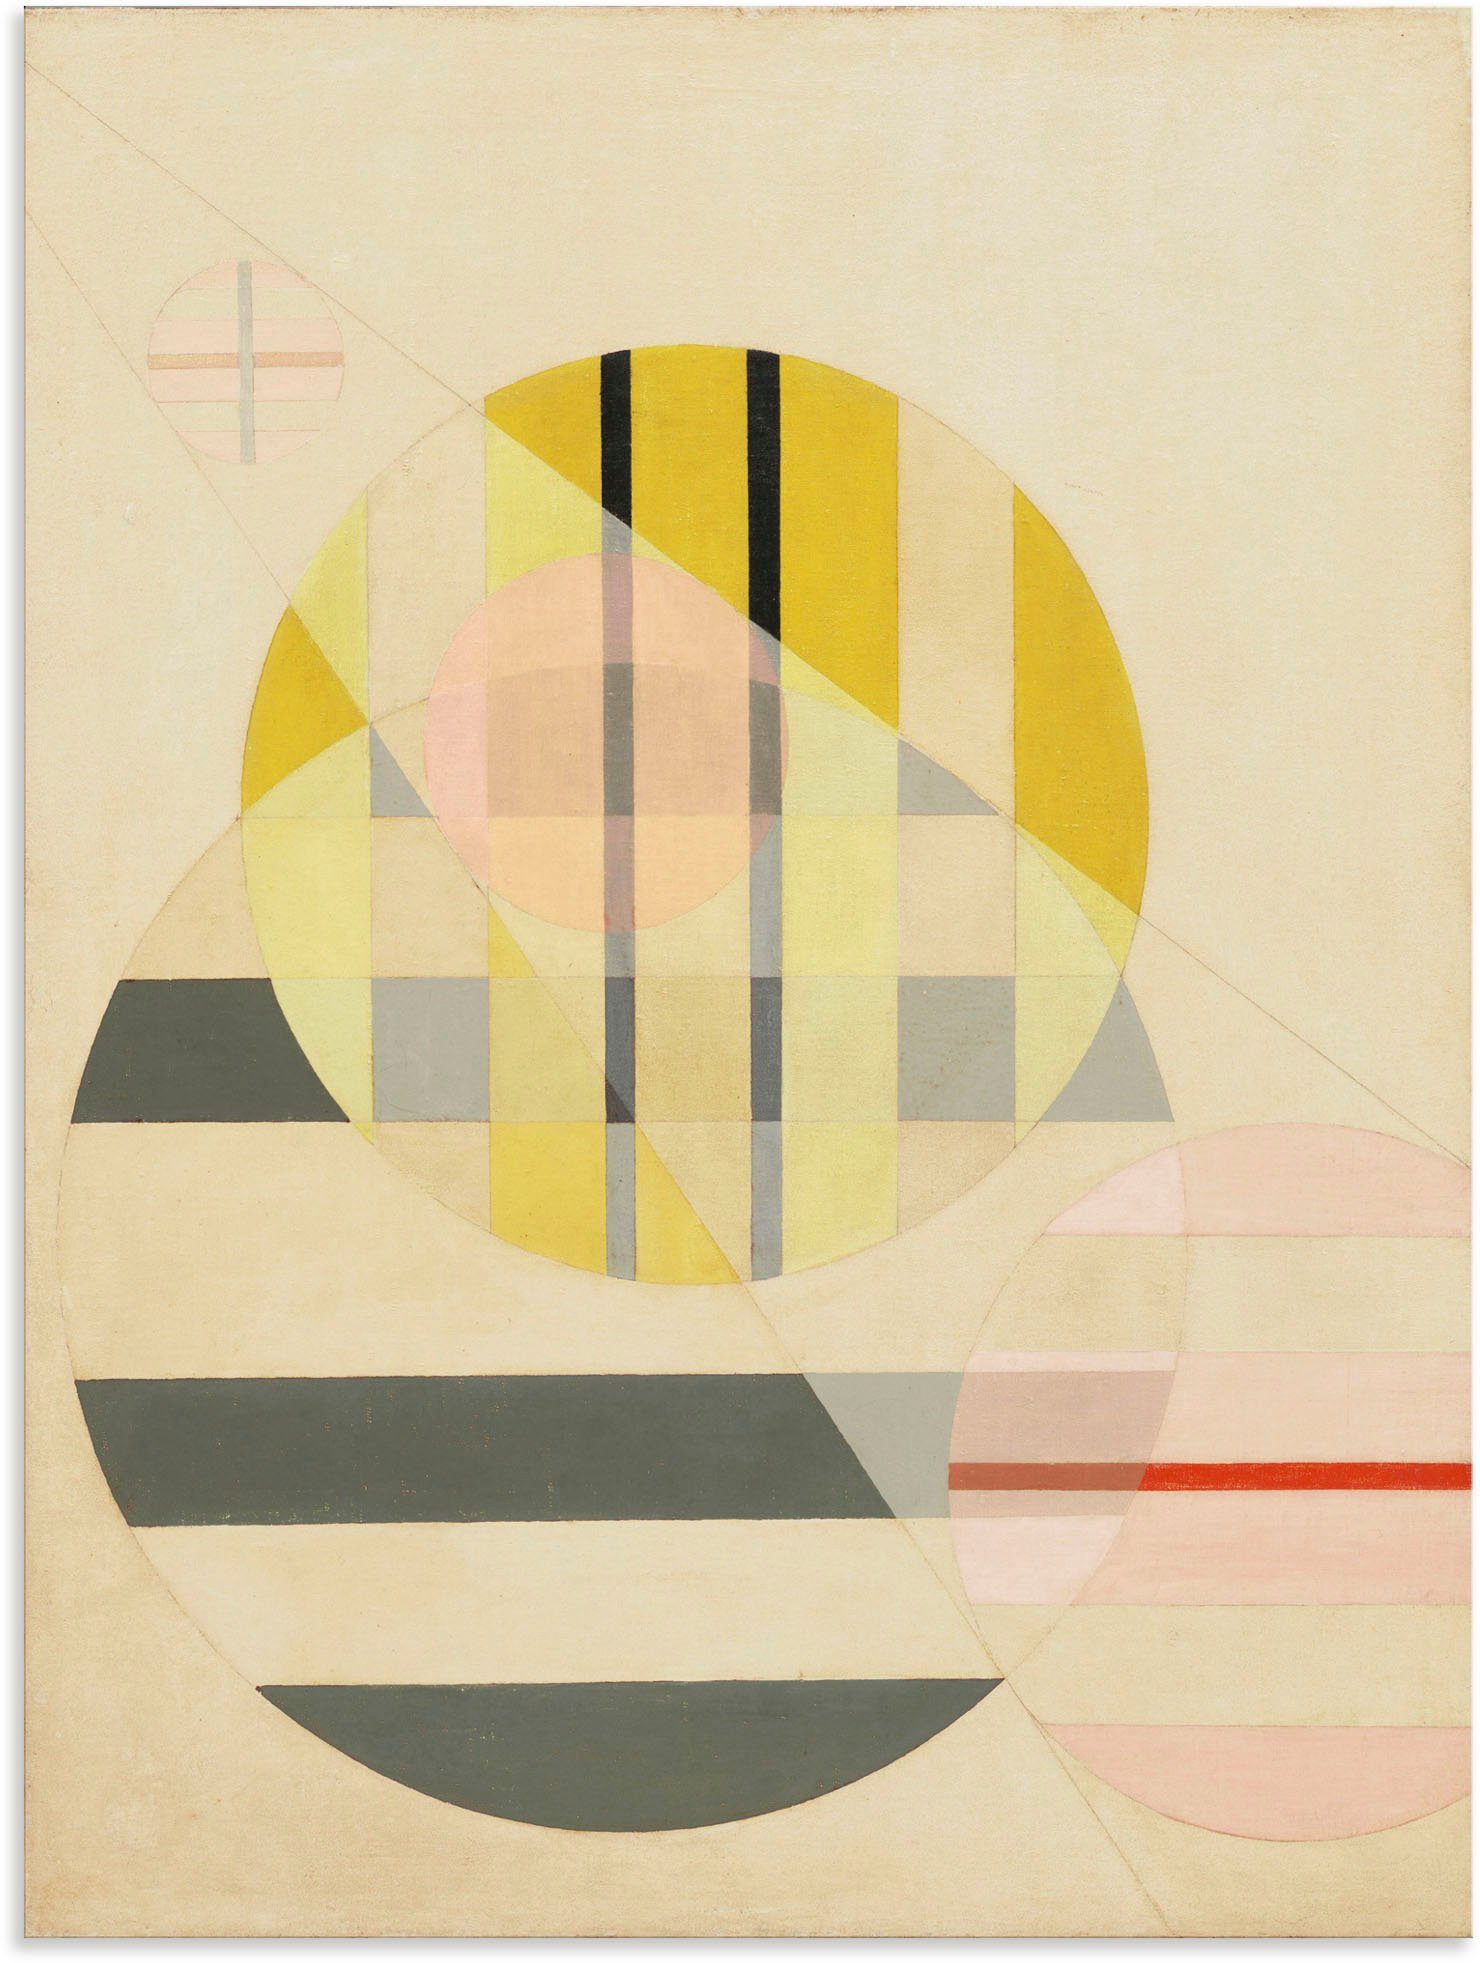 Artland Artprint Z II. 1925